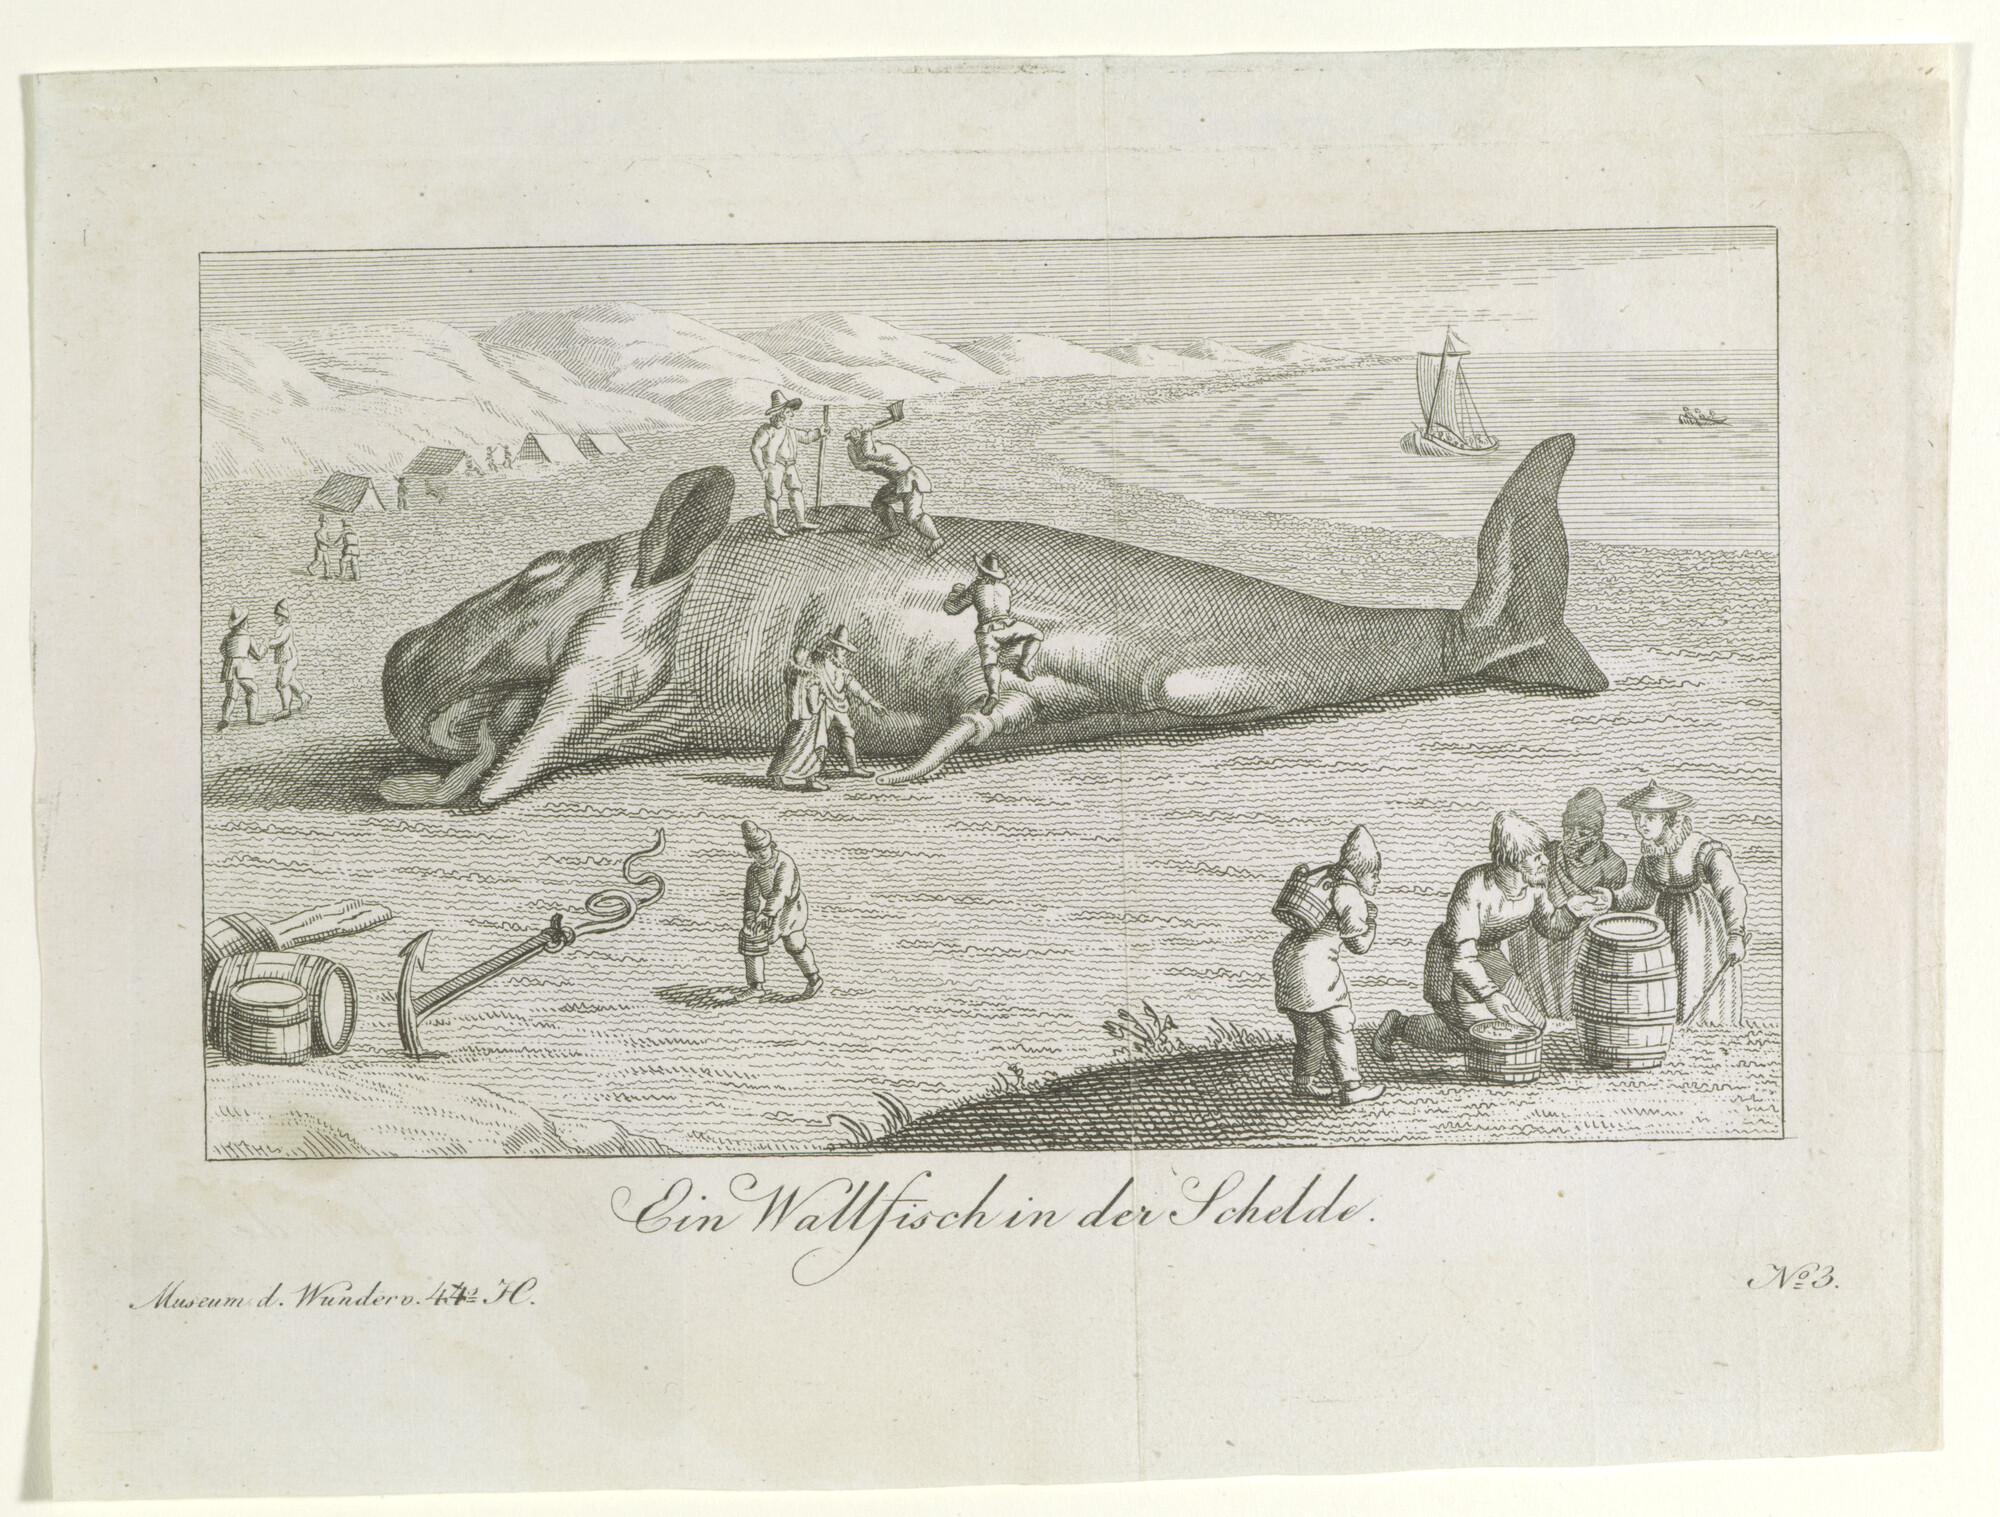 2013.0864; Gravure van een walvis in de Schelde; gravure